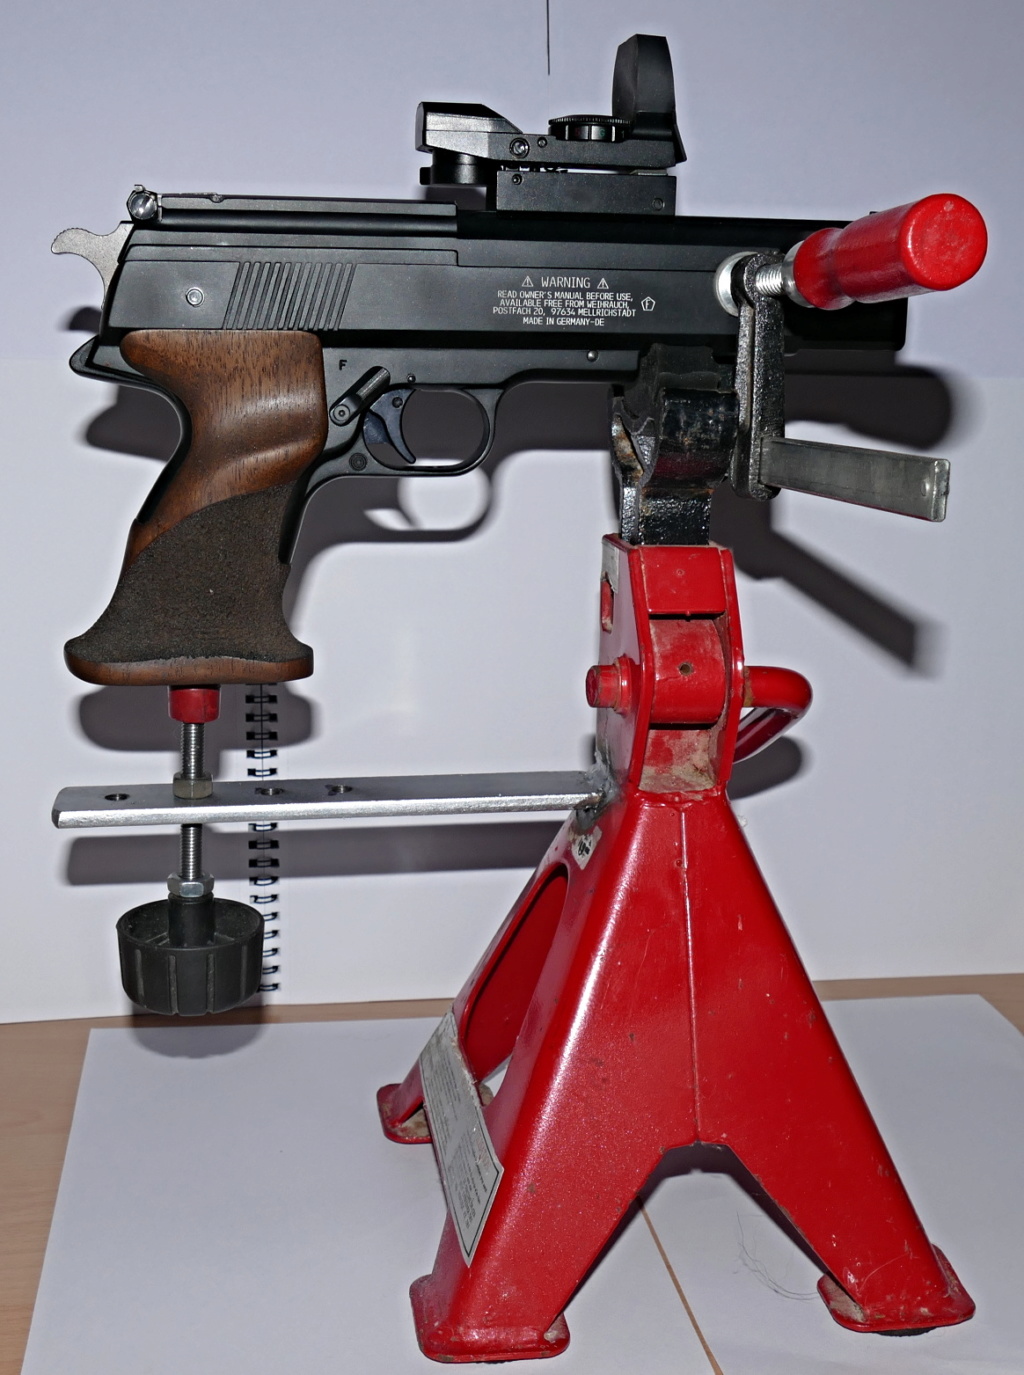 Dispositif pour bloquer un pistolet pour régler la lunette ou Red Dot - Page 2 P1020510